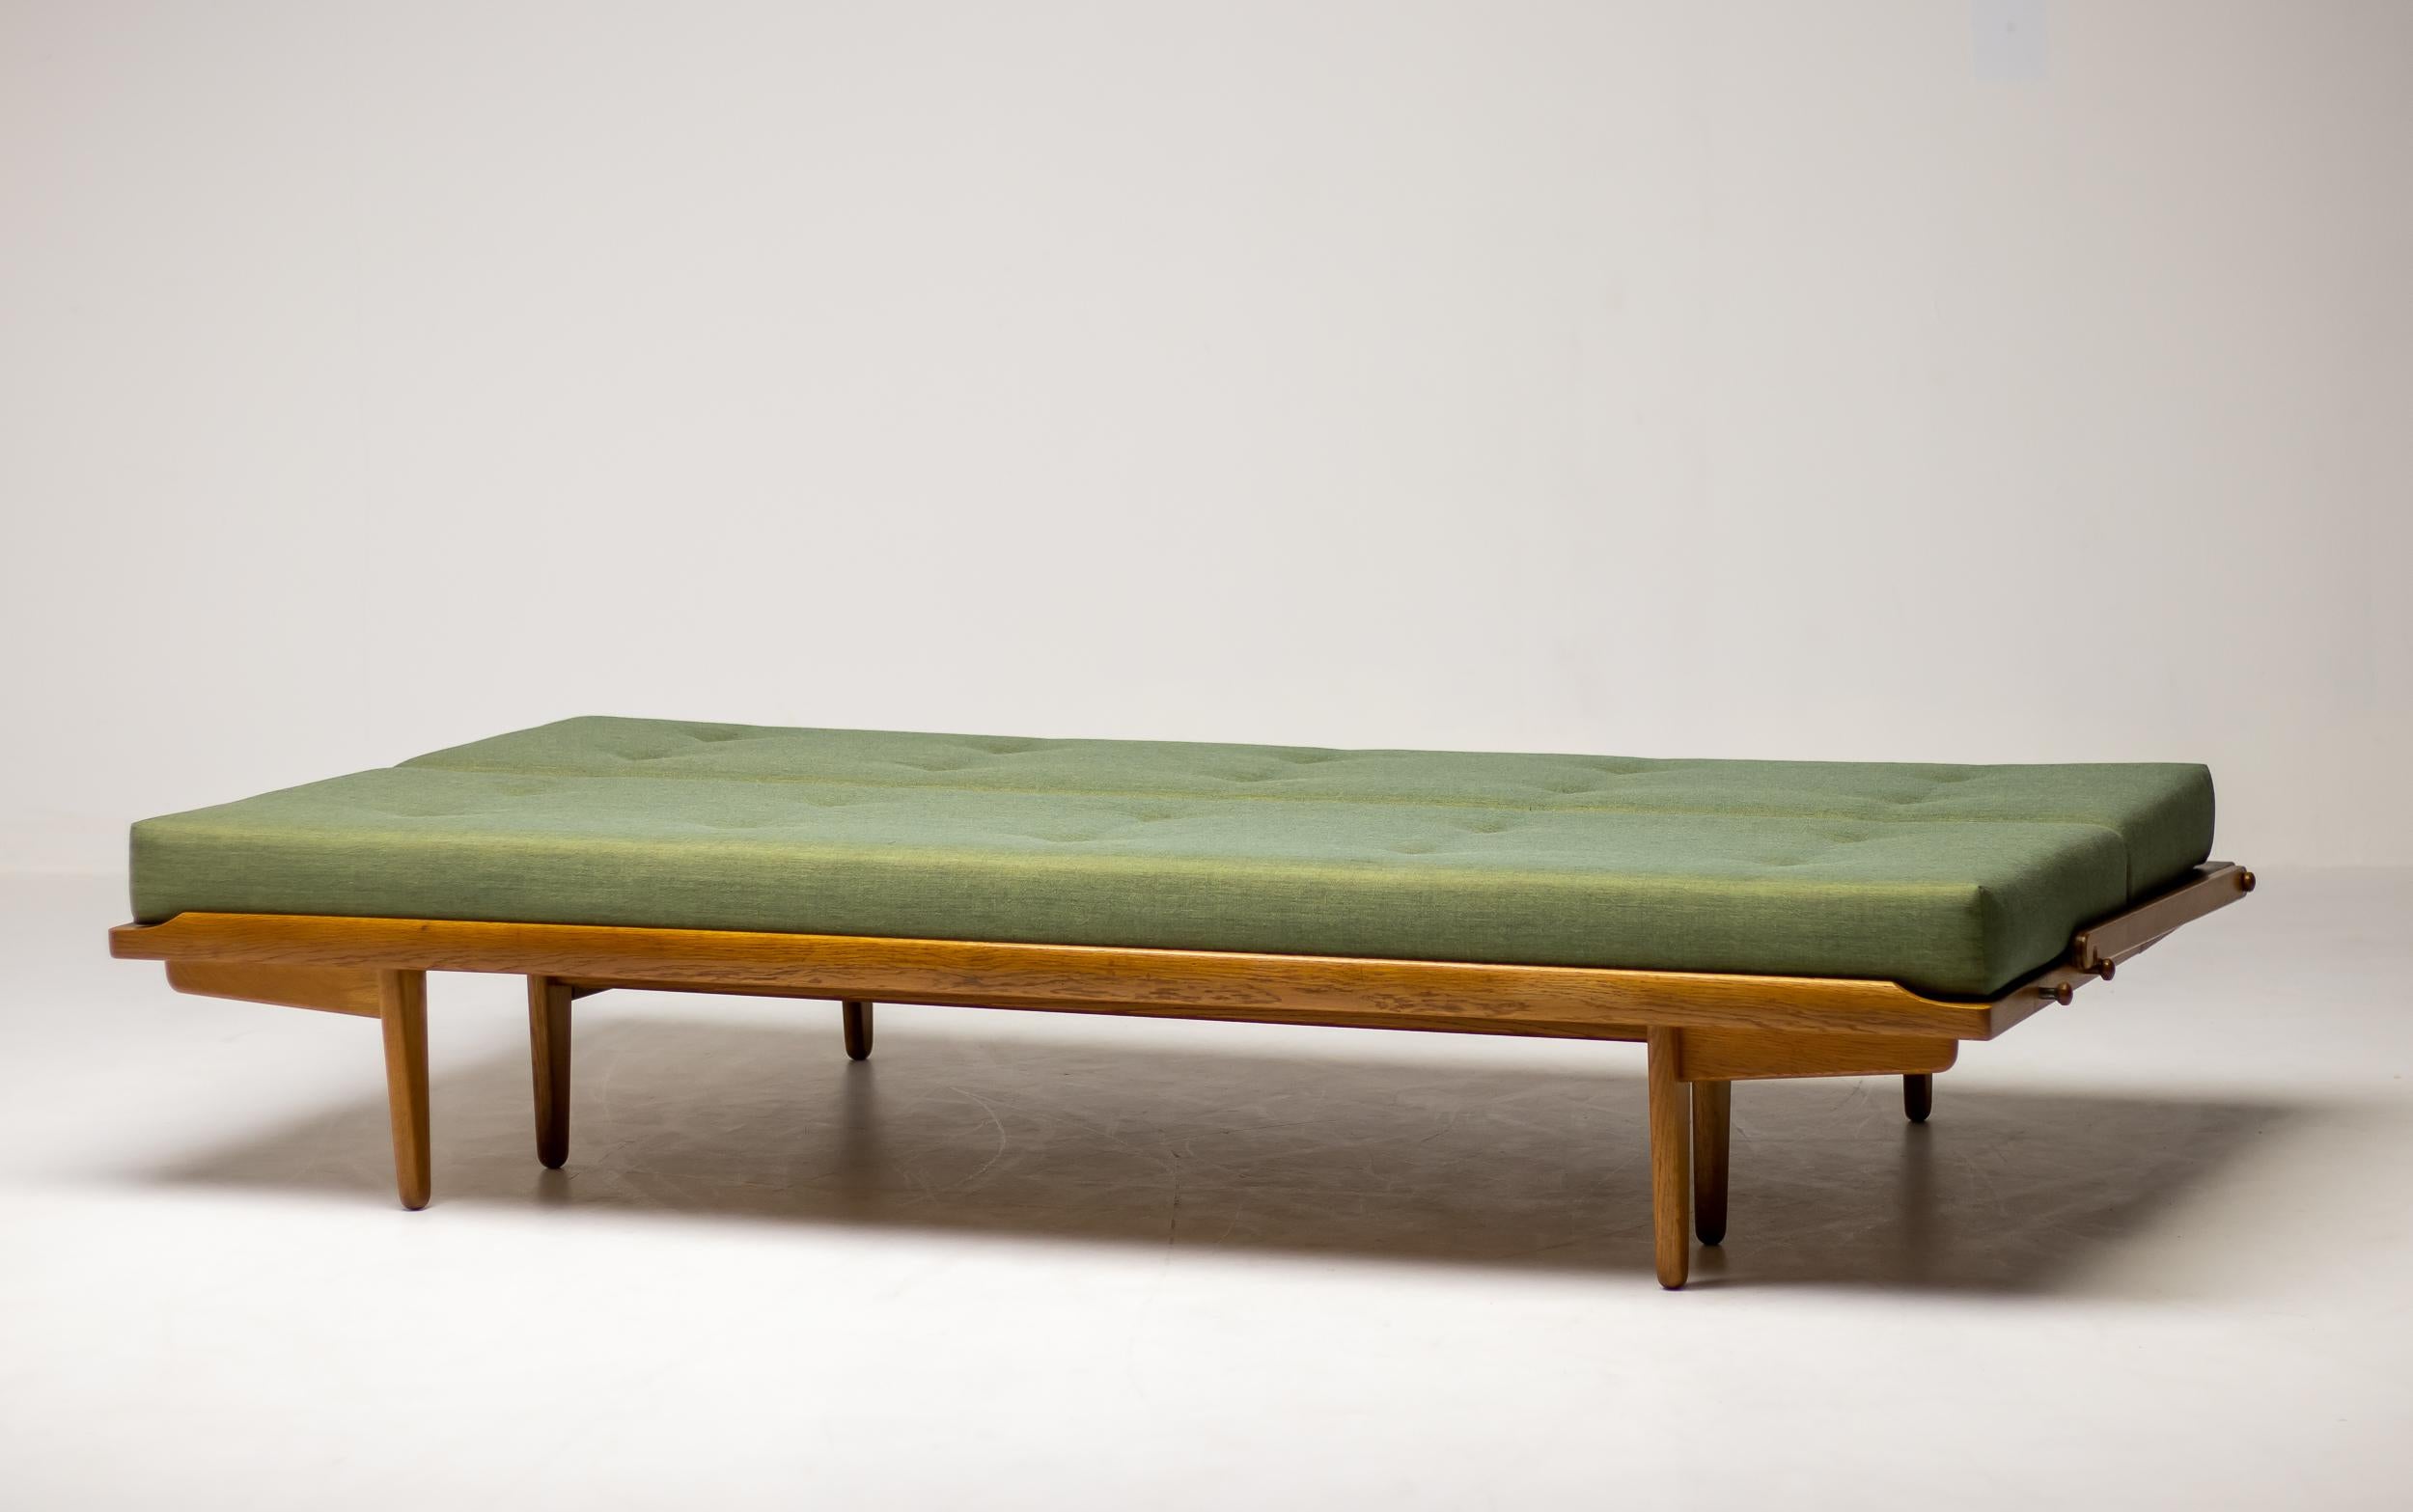 Très beau canapé-lit sophistiqué Modèle 981 conçu par Poul Volther, fabriqué par Gemla, Danemark, vers 1960. Ce canapé, surnommé 